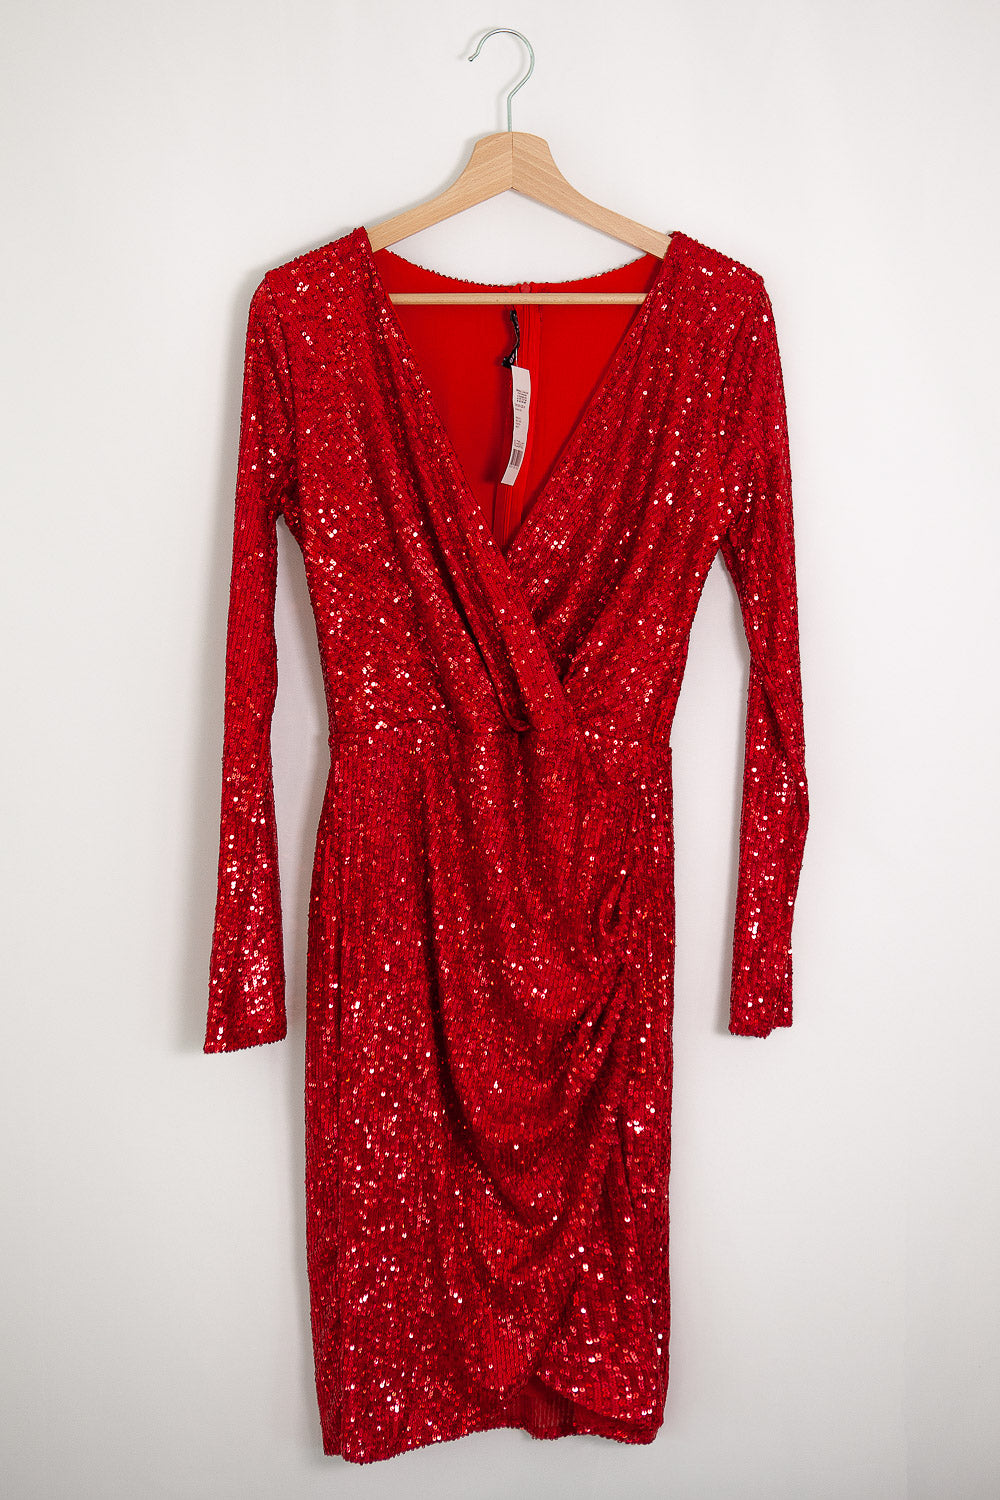 Red Mini Dress Sequin - Valentines Dress